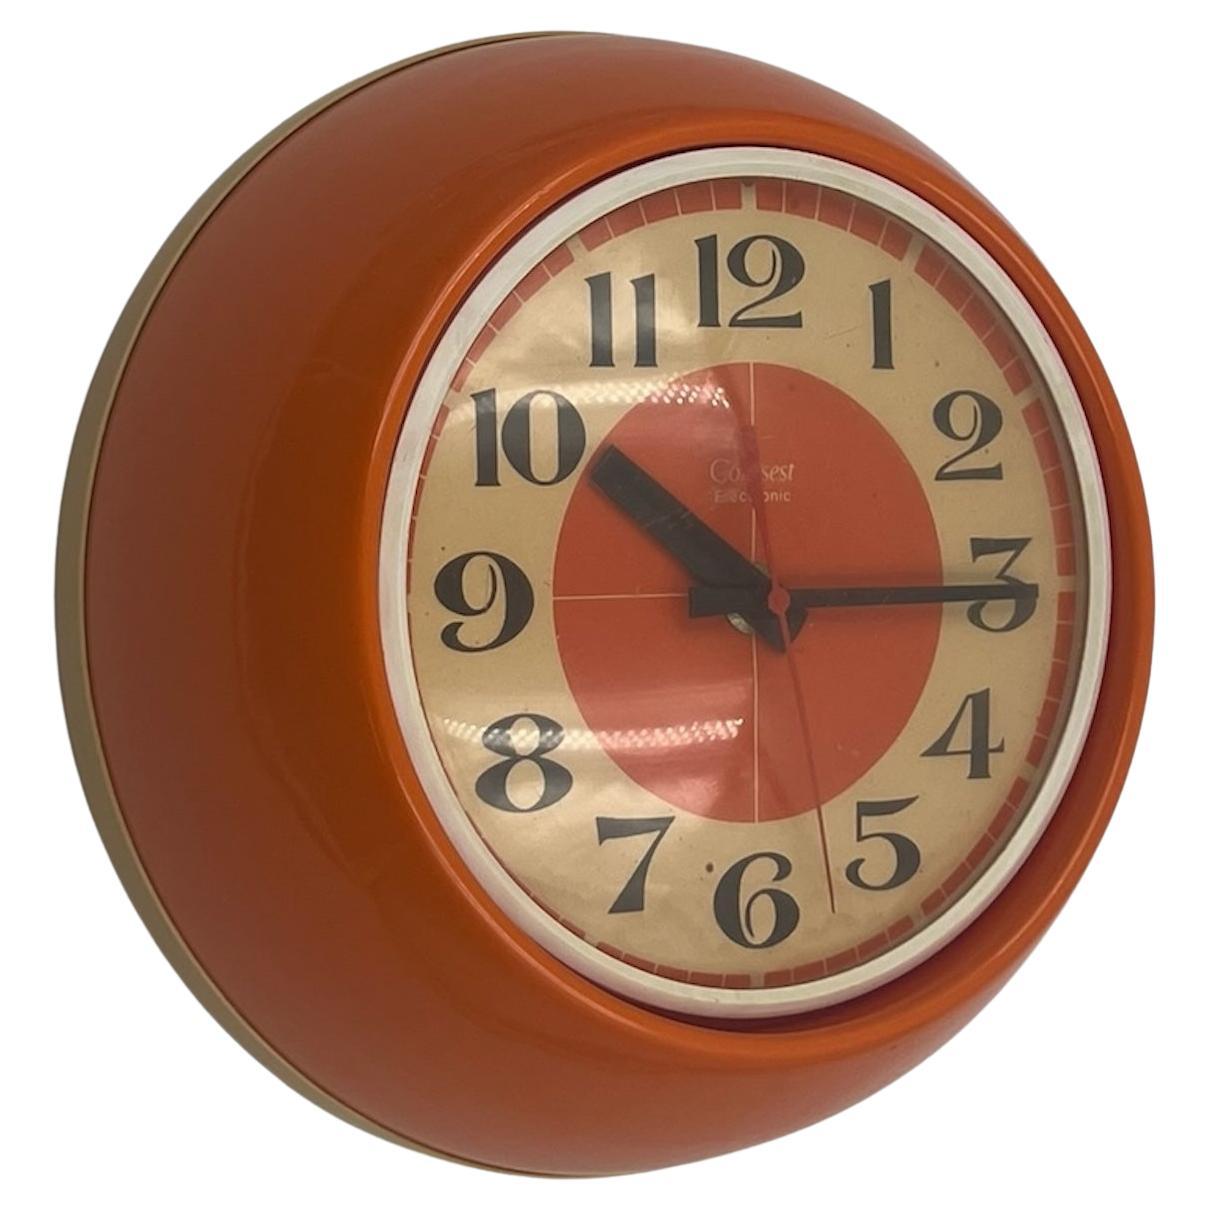 Horloge de l'ère spatiale des années 1970 par Comsest - décor orange rare fabriqué en Italie